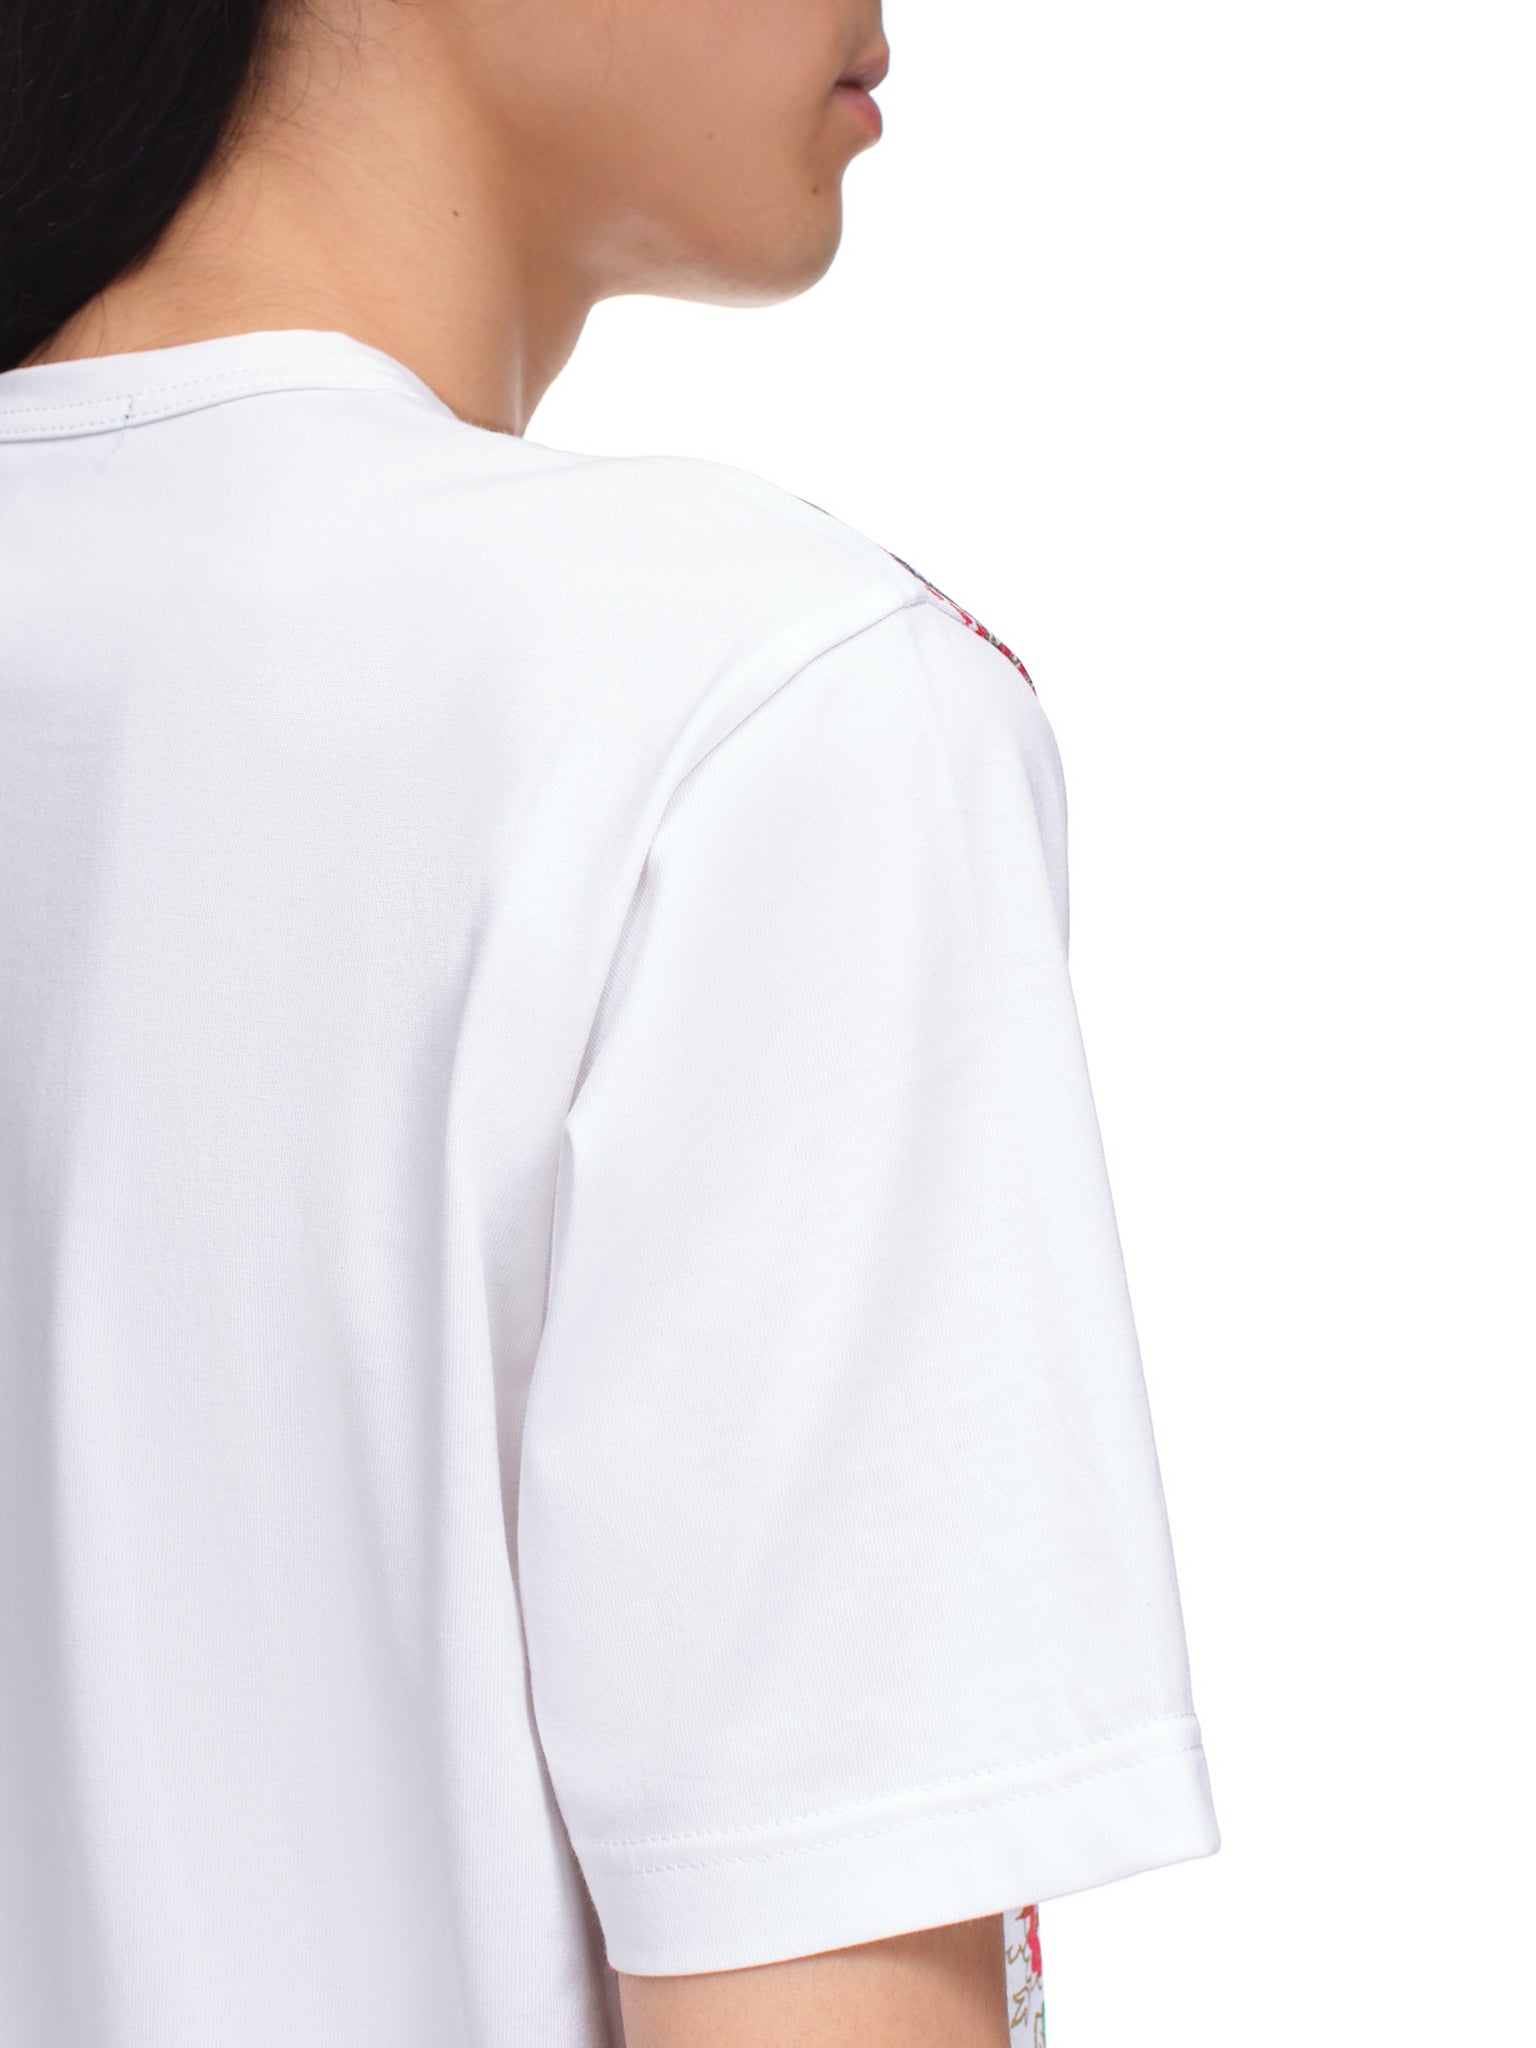 Junya Watanabe Paisley Shirt | H. Lorenzo - detail 2